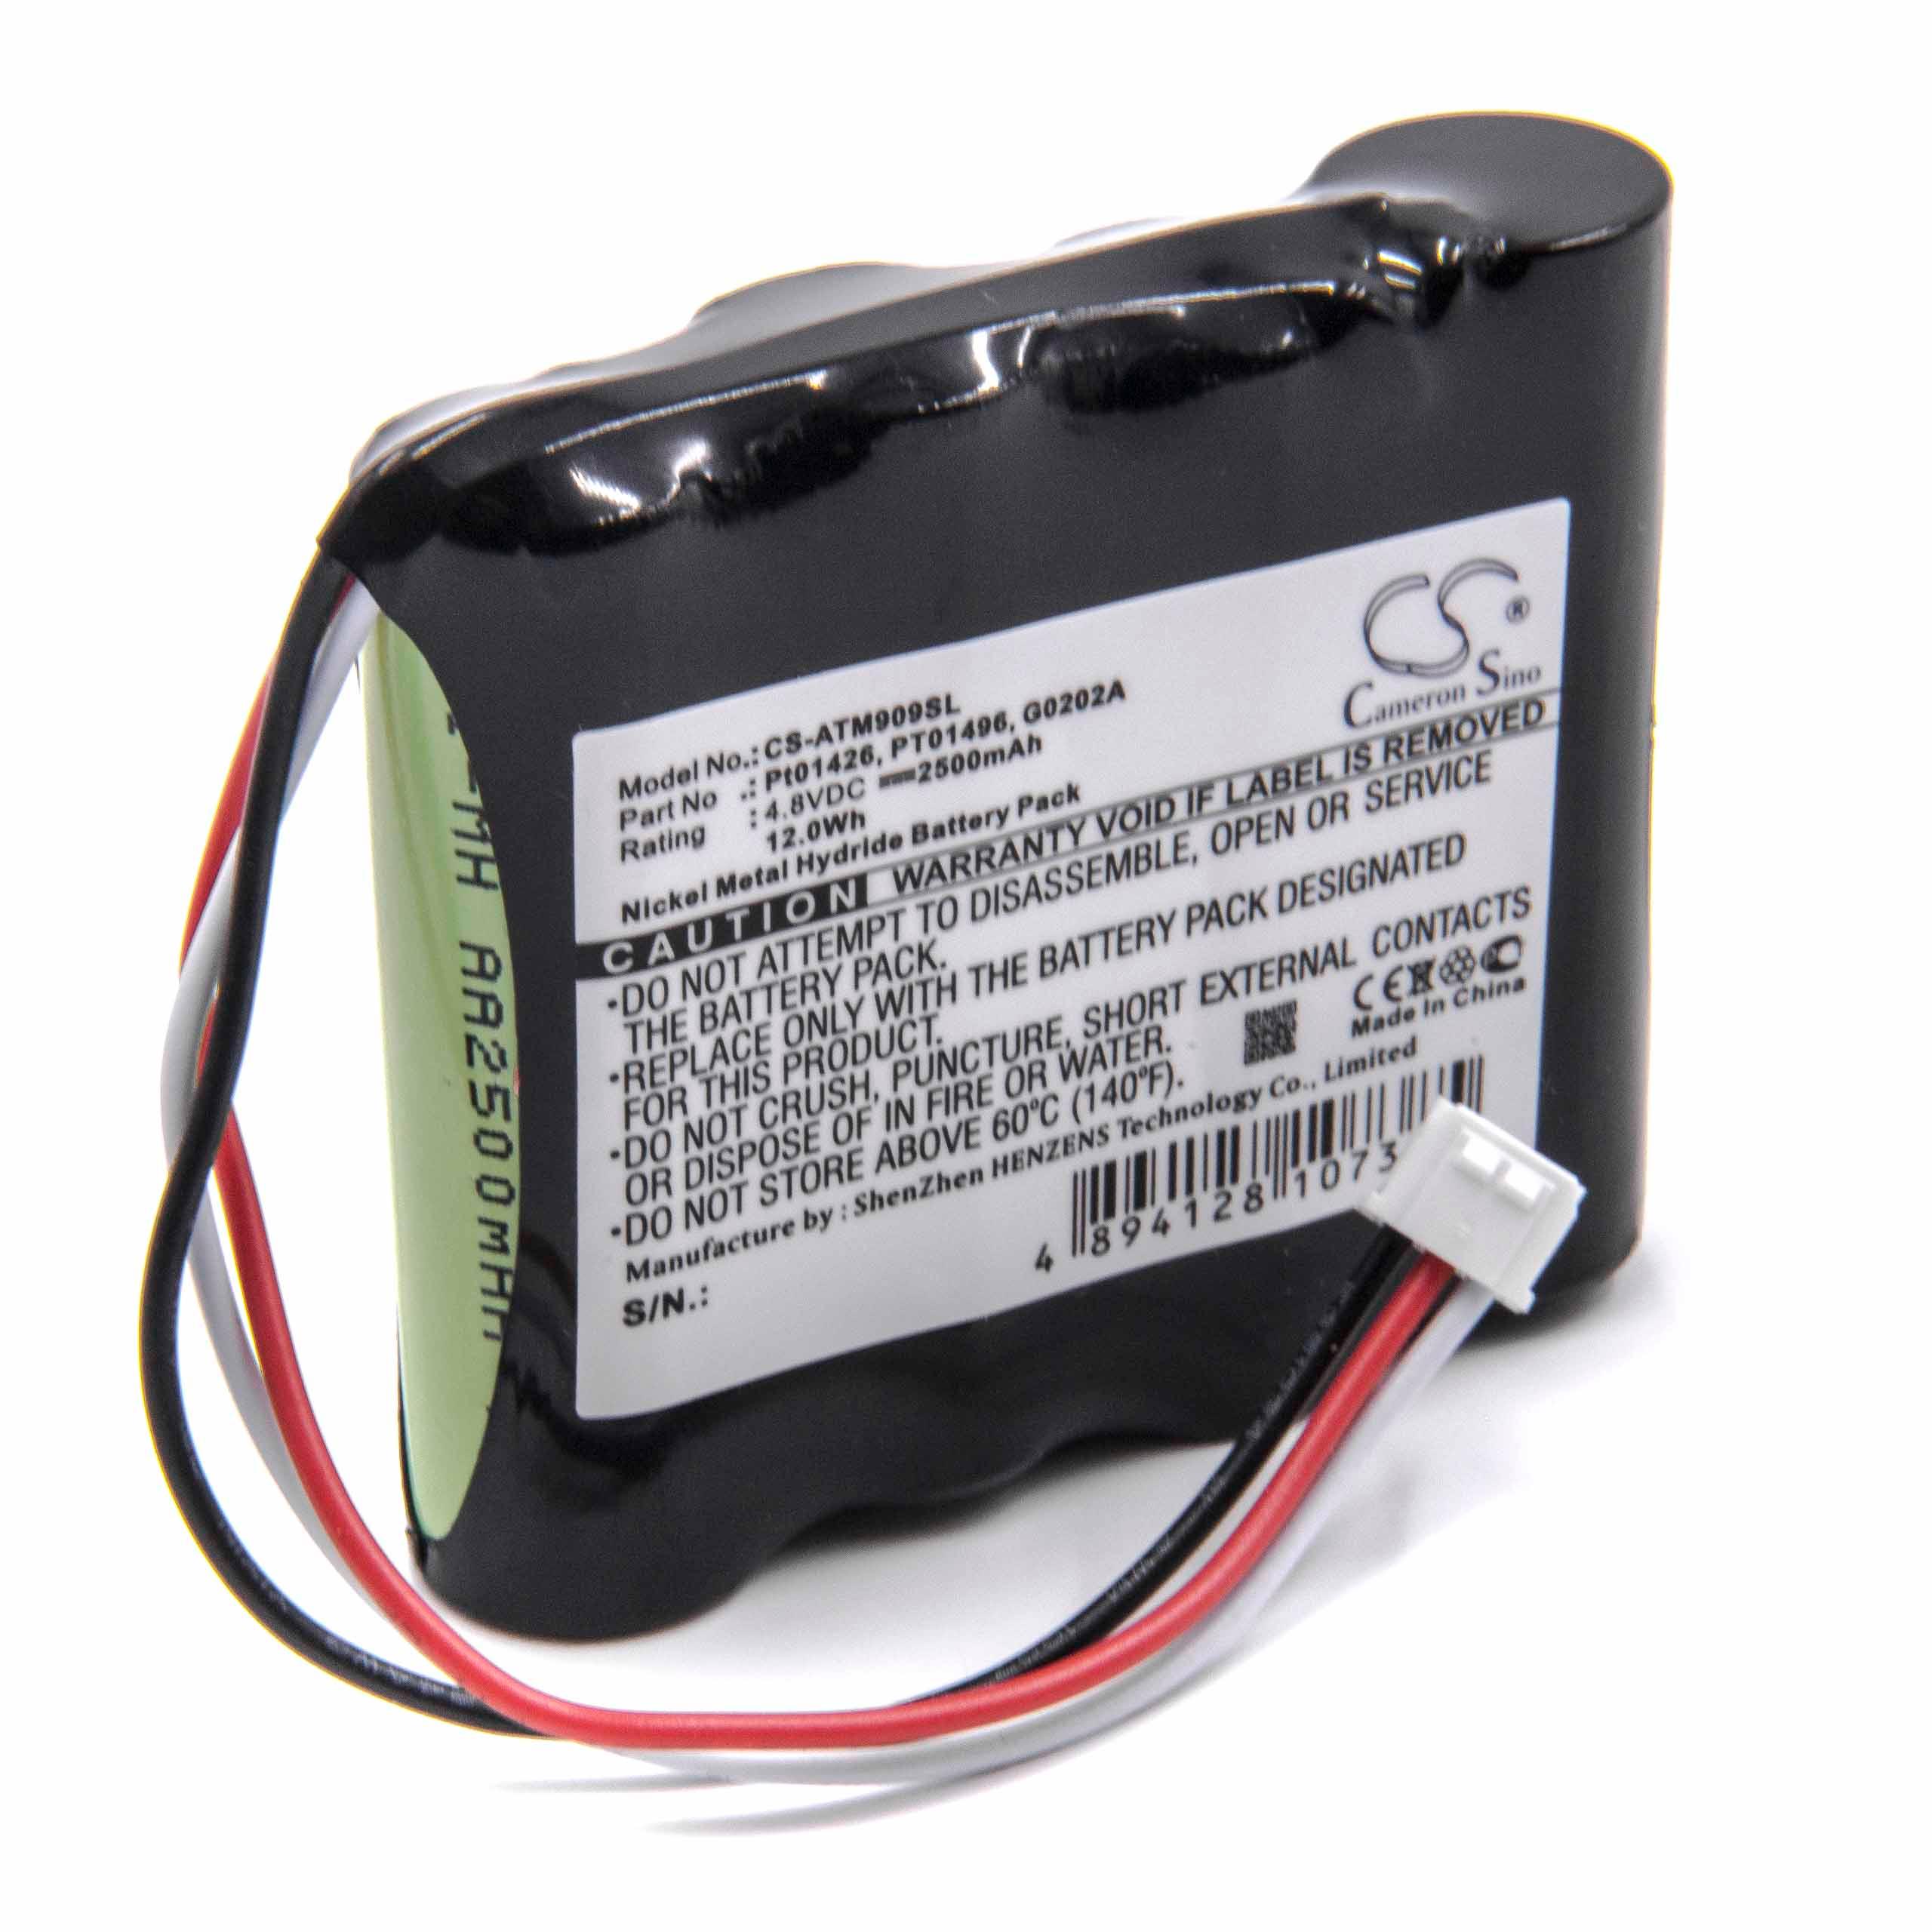 Akumulator do przyrządu pomiarowego zamiennik Anritsu G0202A, PT01426, PT01496 - 2500 mAh 4,8 V NiMH